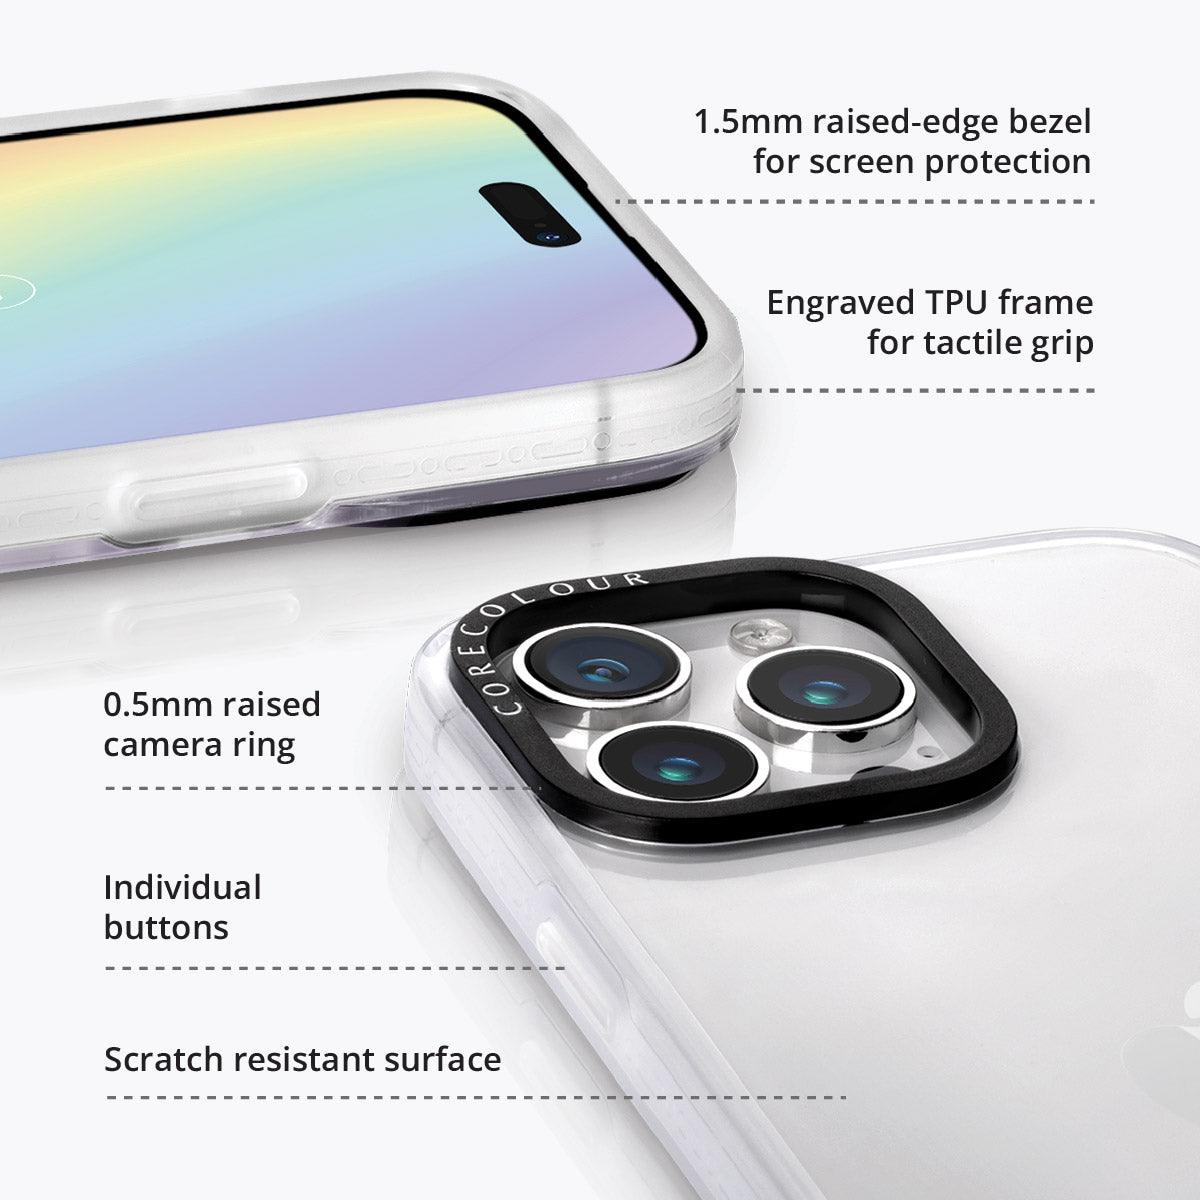 iPhone 13 Rainy Pastel Phone Case - CORECOLOUR AU